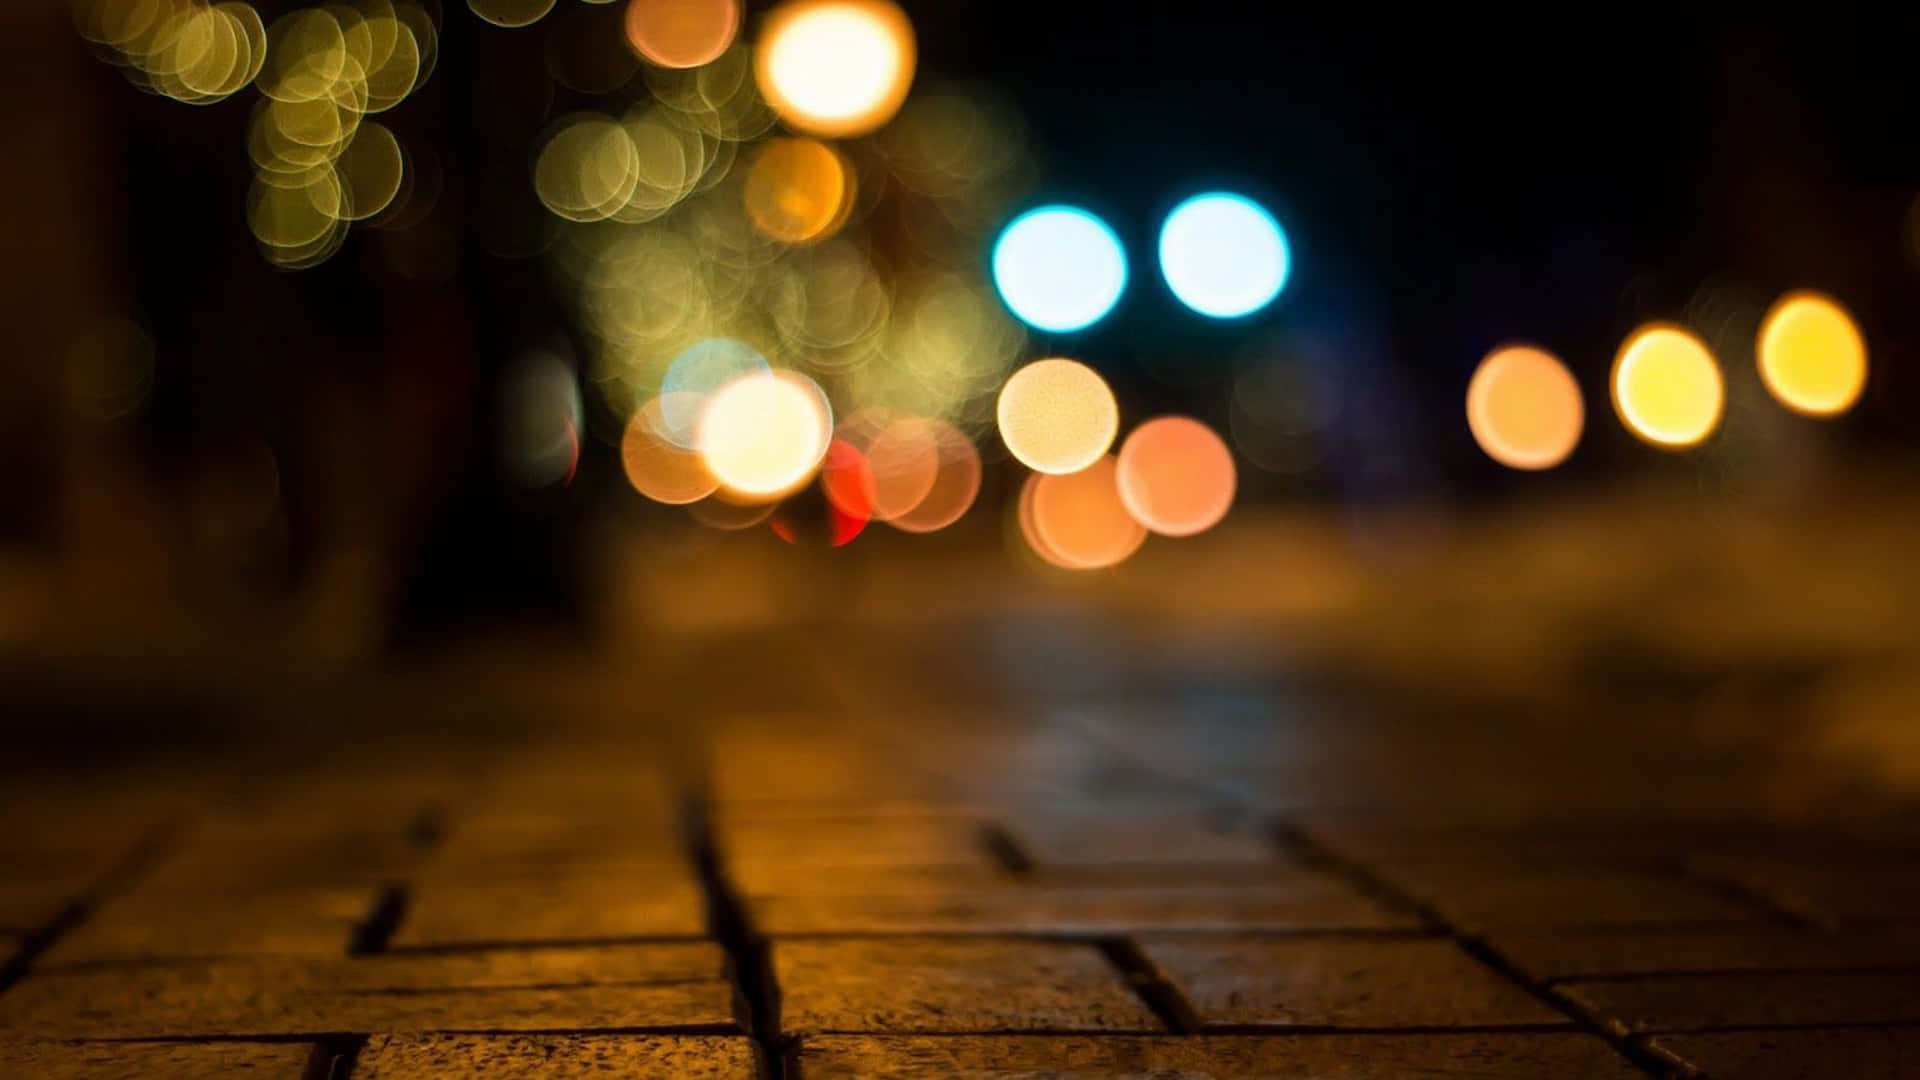 Blurrede lys på en mur-sidewalk om natten